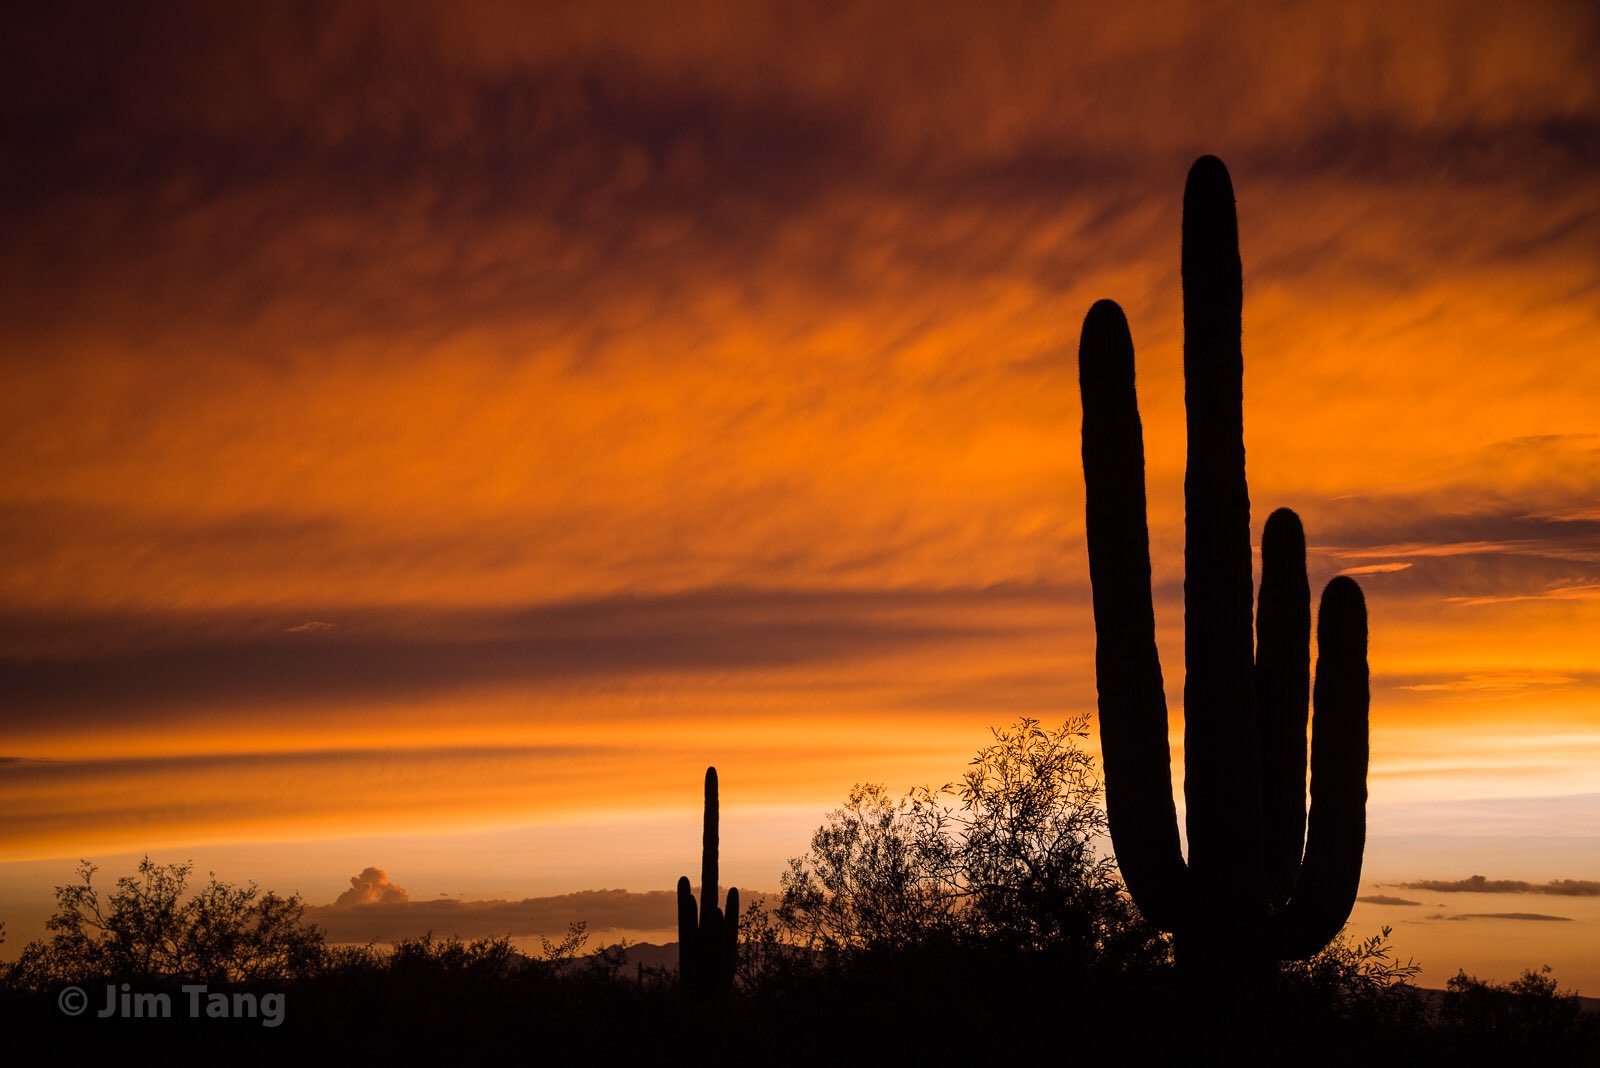 A beautiful Arizona sunset by Jim Tang @wxmann